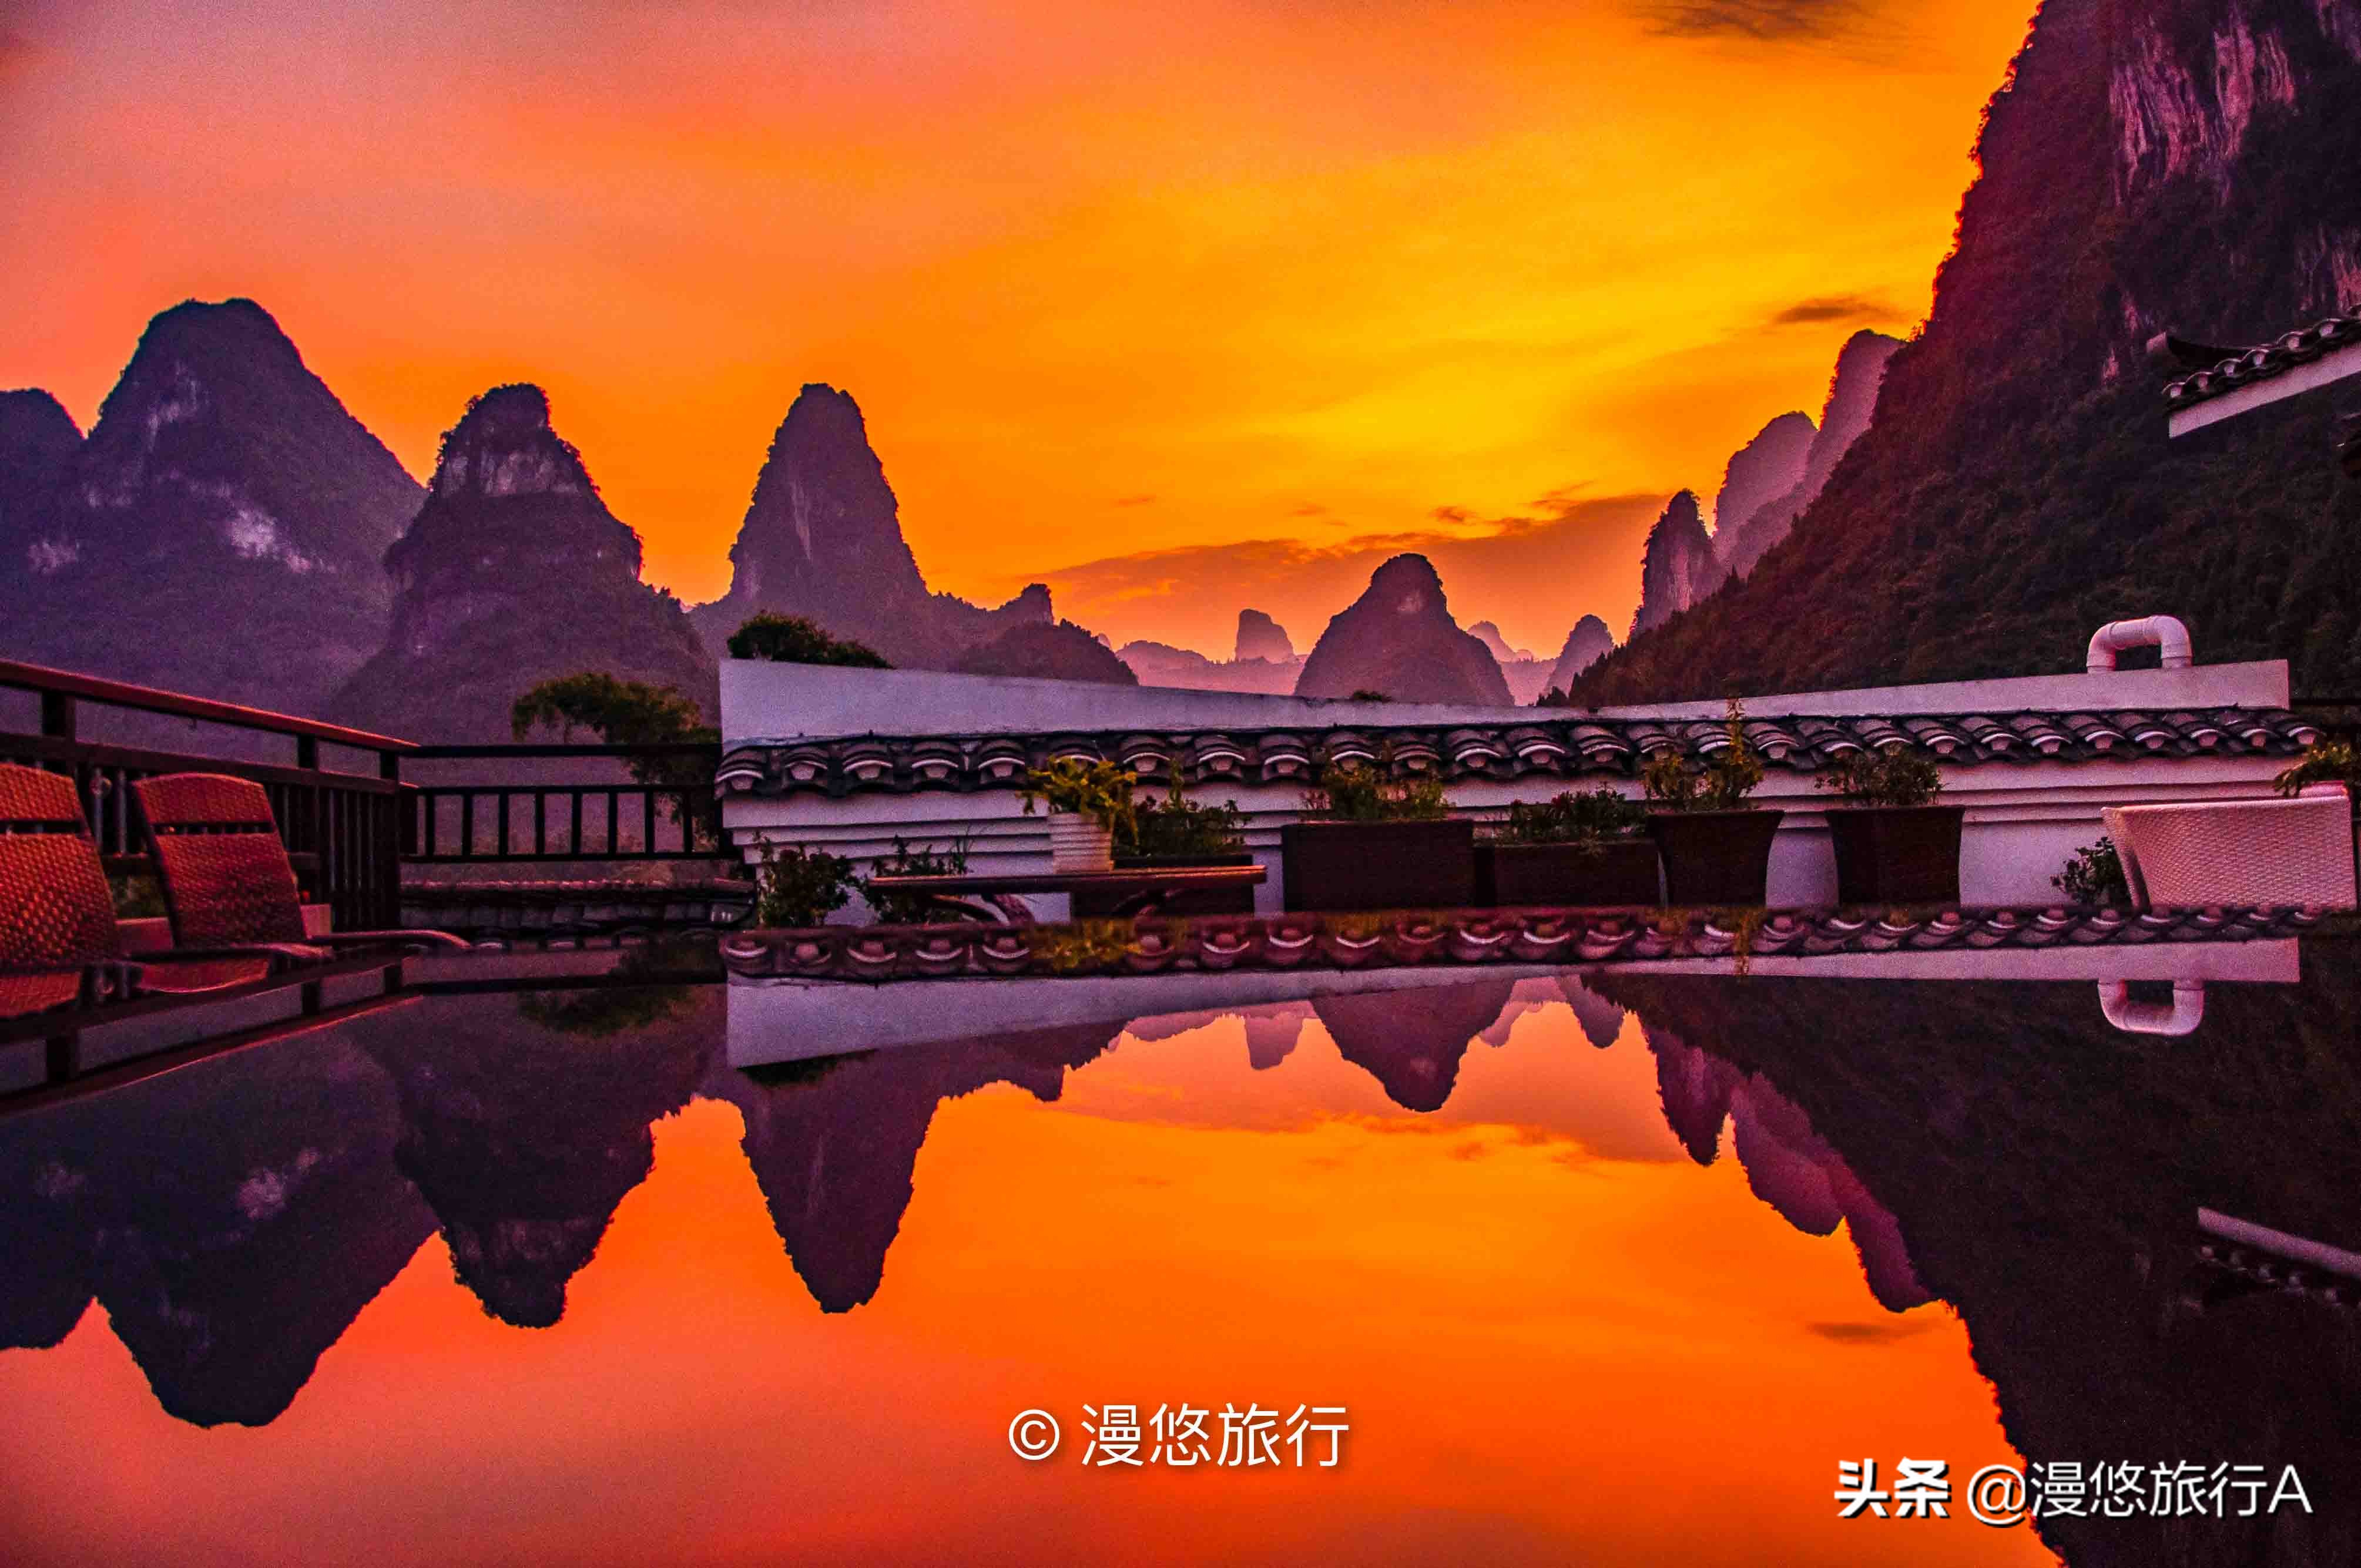 中国最美山水不在桂林市，藏在兴坪镇的山水才是资深旅行者的天堂